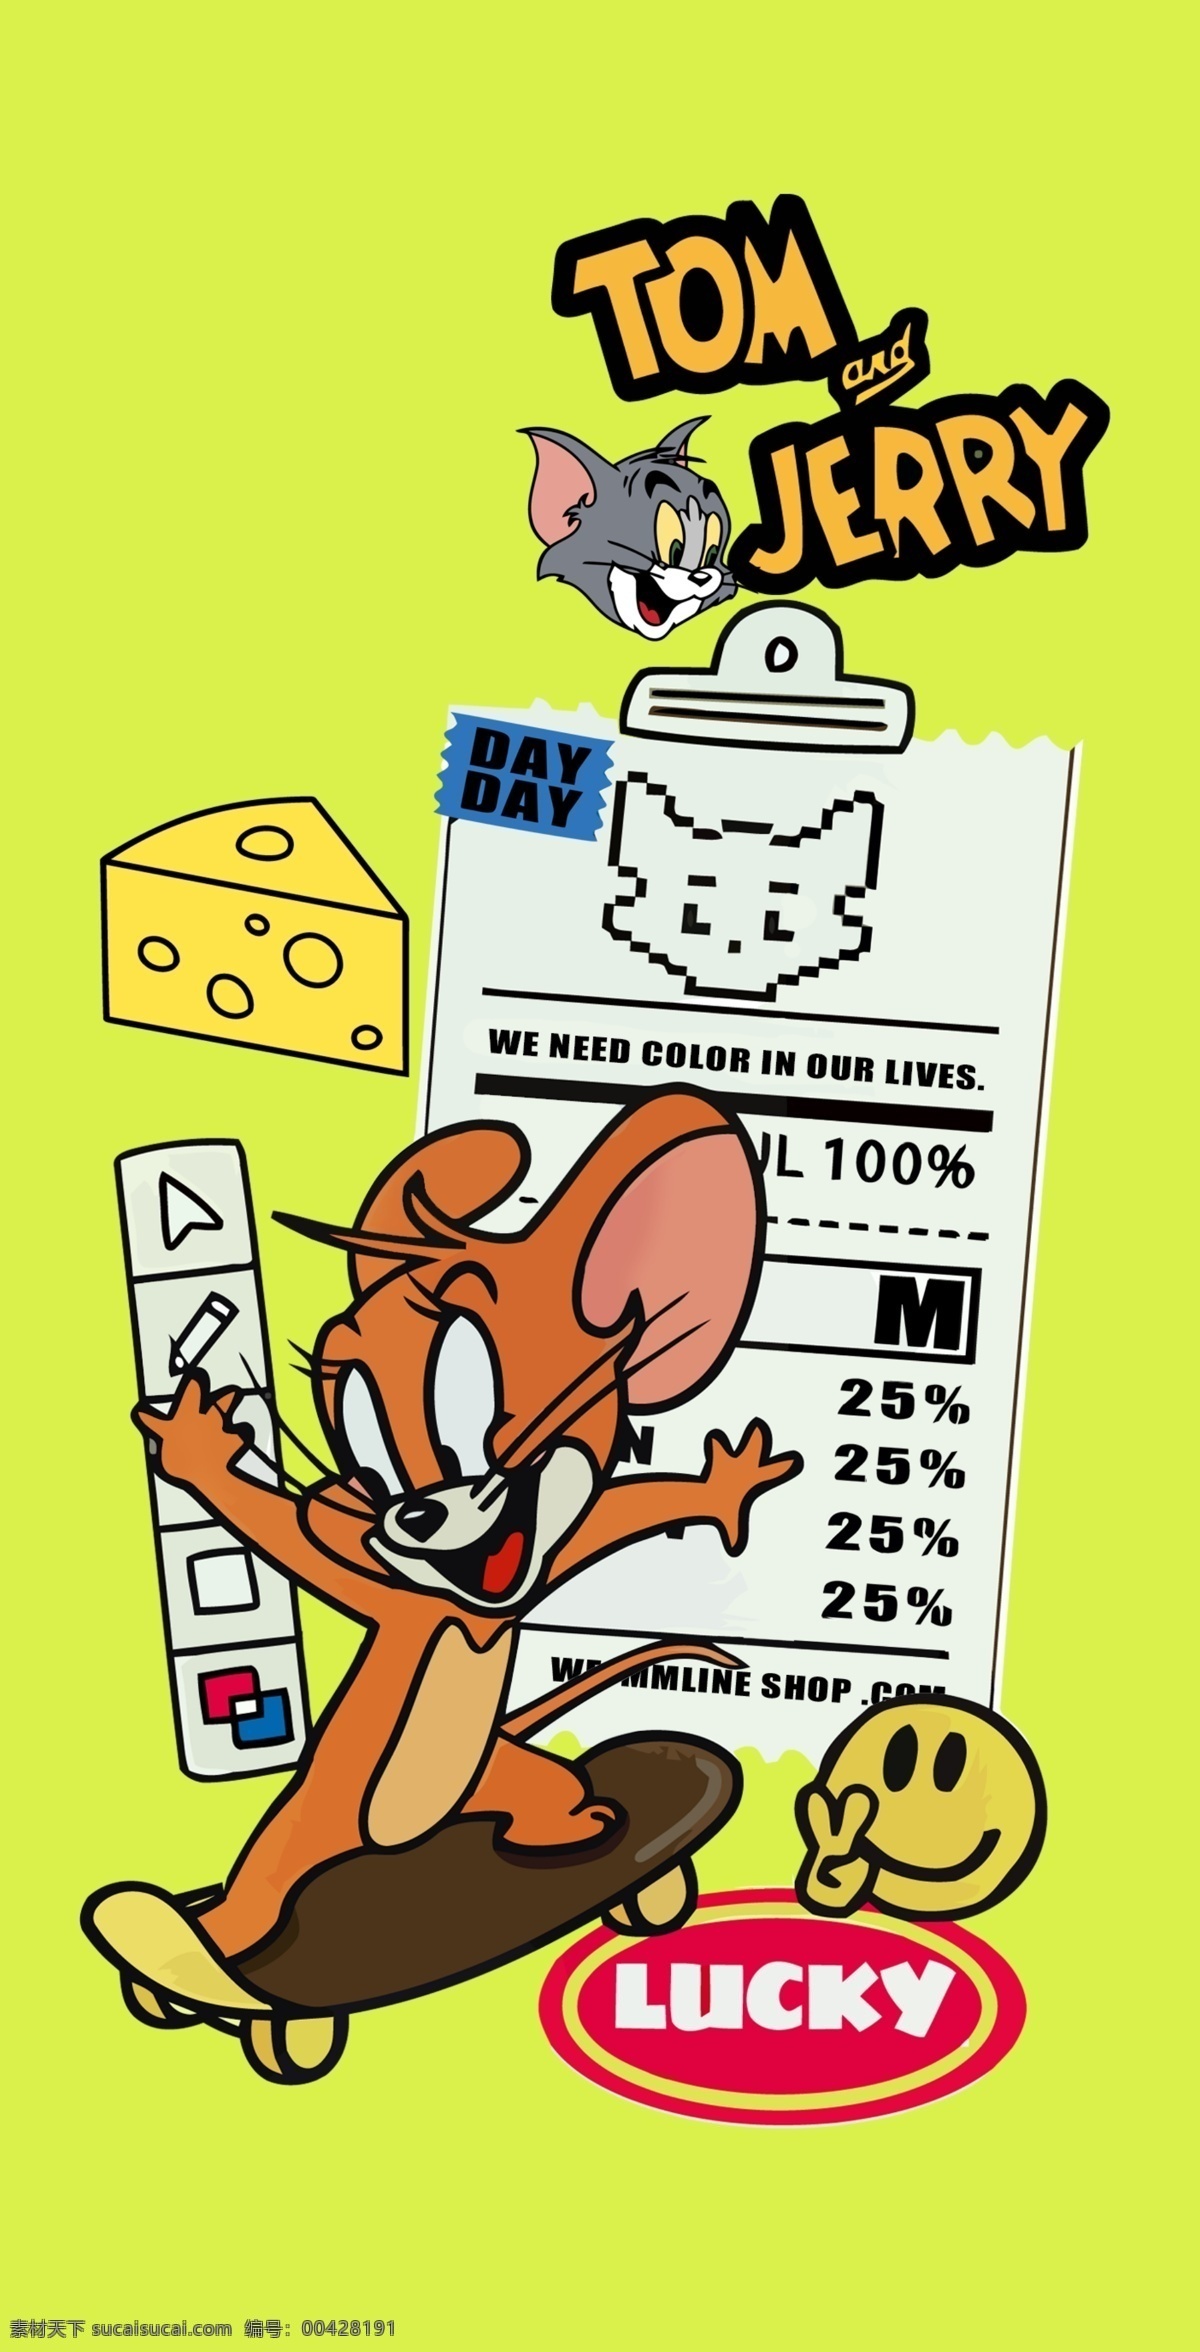 卡通米老鼠 猫和老鼠图片 猫和老鼠 趣味卡通 可爱卡通 动漫动画 动漫人物